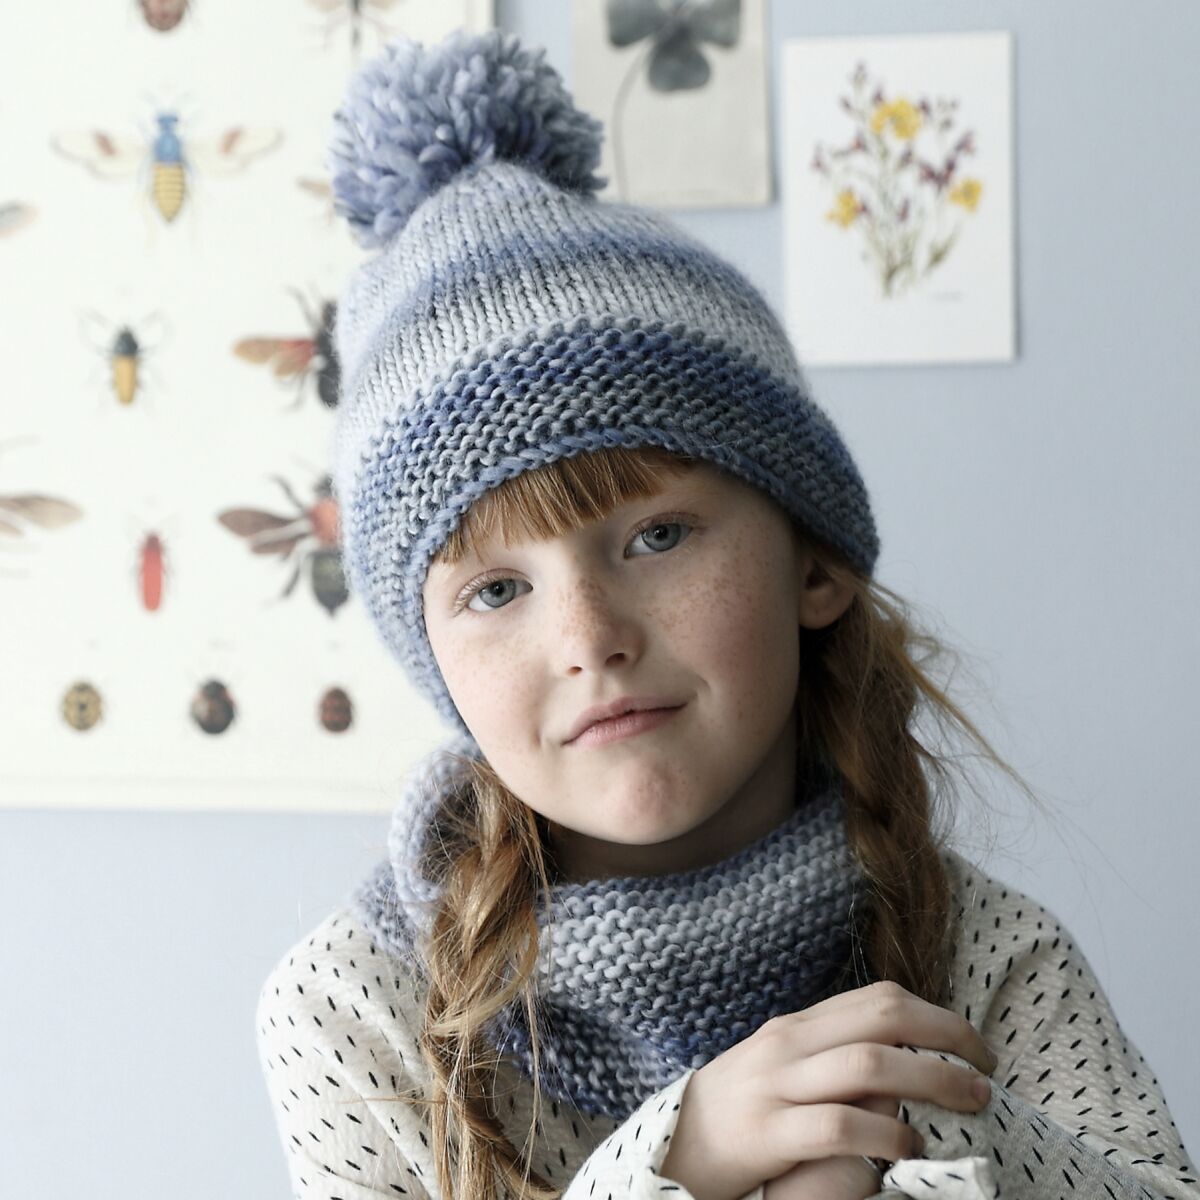 Bonnet en tricot pour bébés et enfants - Avoine - Bajoue